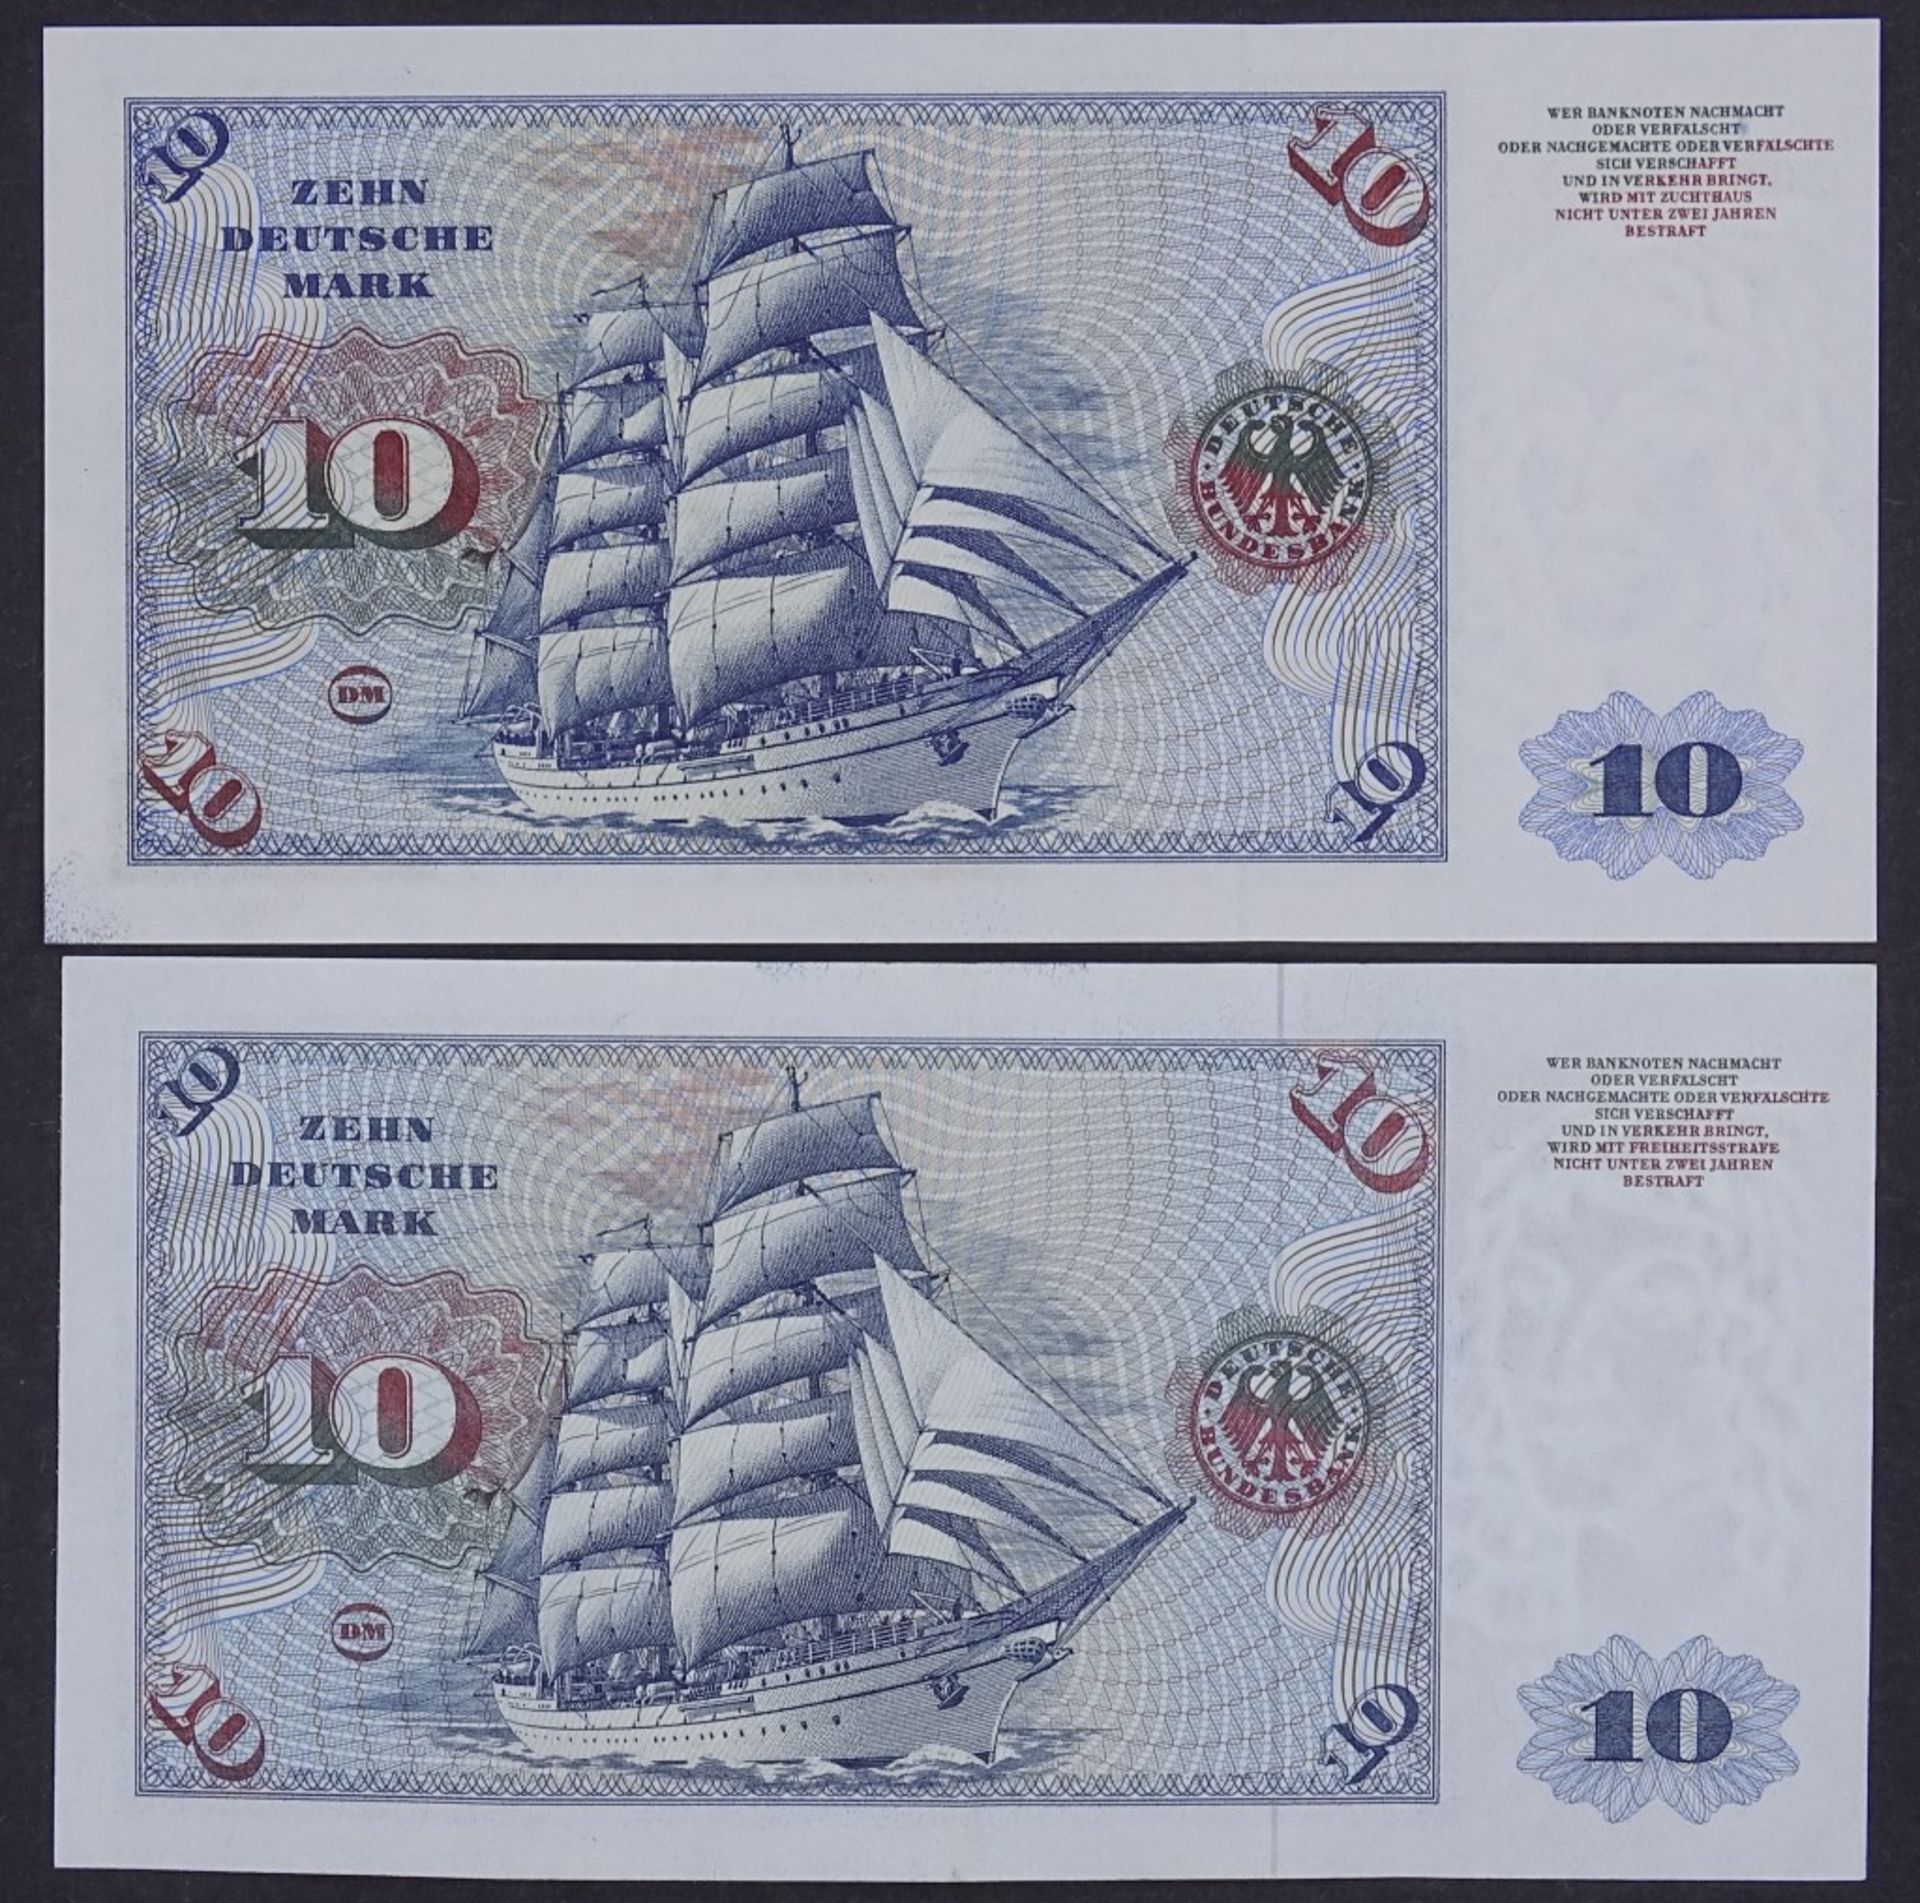 Zwei Banknoten - 10 Deutsche Mark 1960/77 - Deutsche Bundesbank- - -22.61 % buyer's premium on the - Bild 2 aus 2